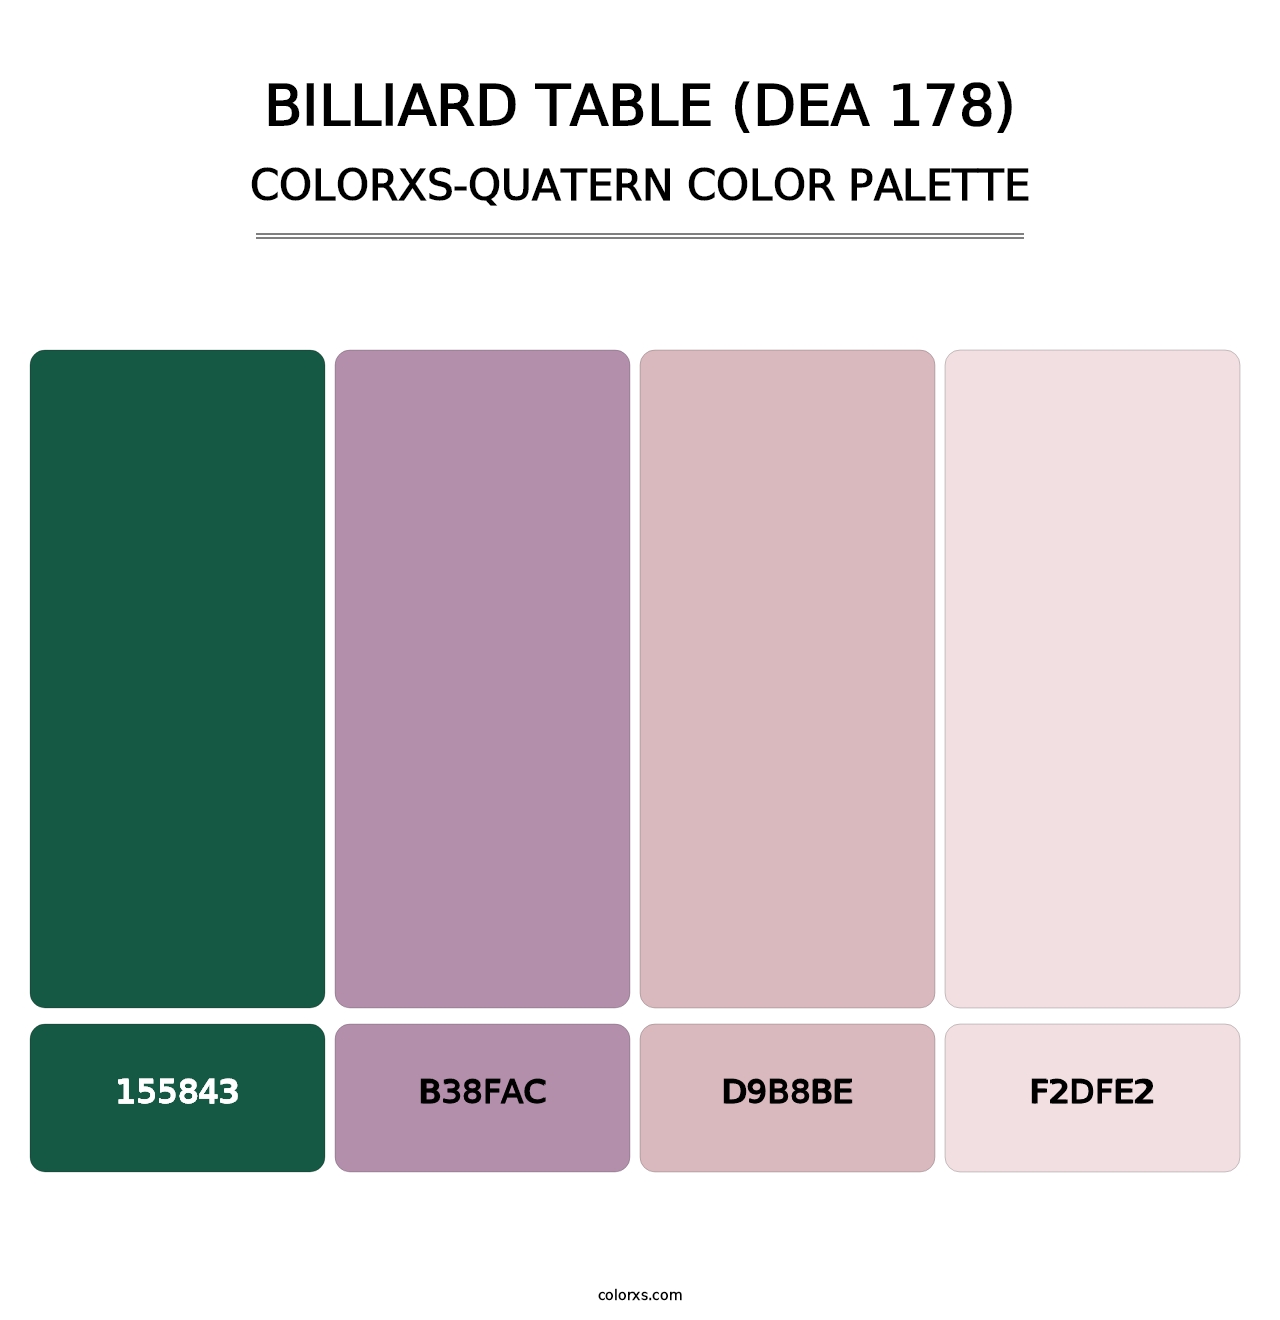 Billiard Table (DEA 178) - Colorxs Quatern Palette